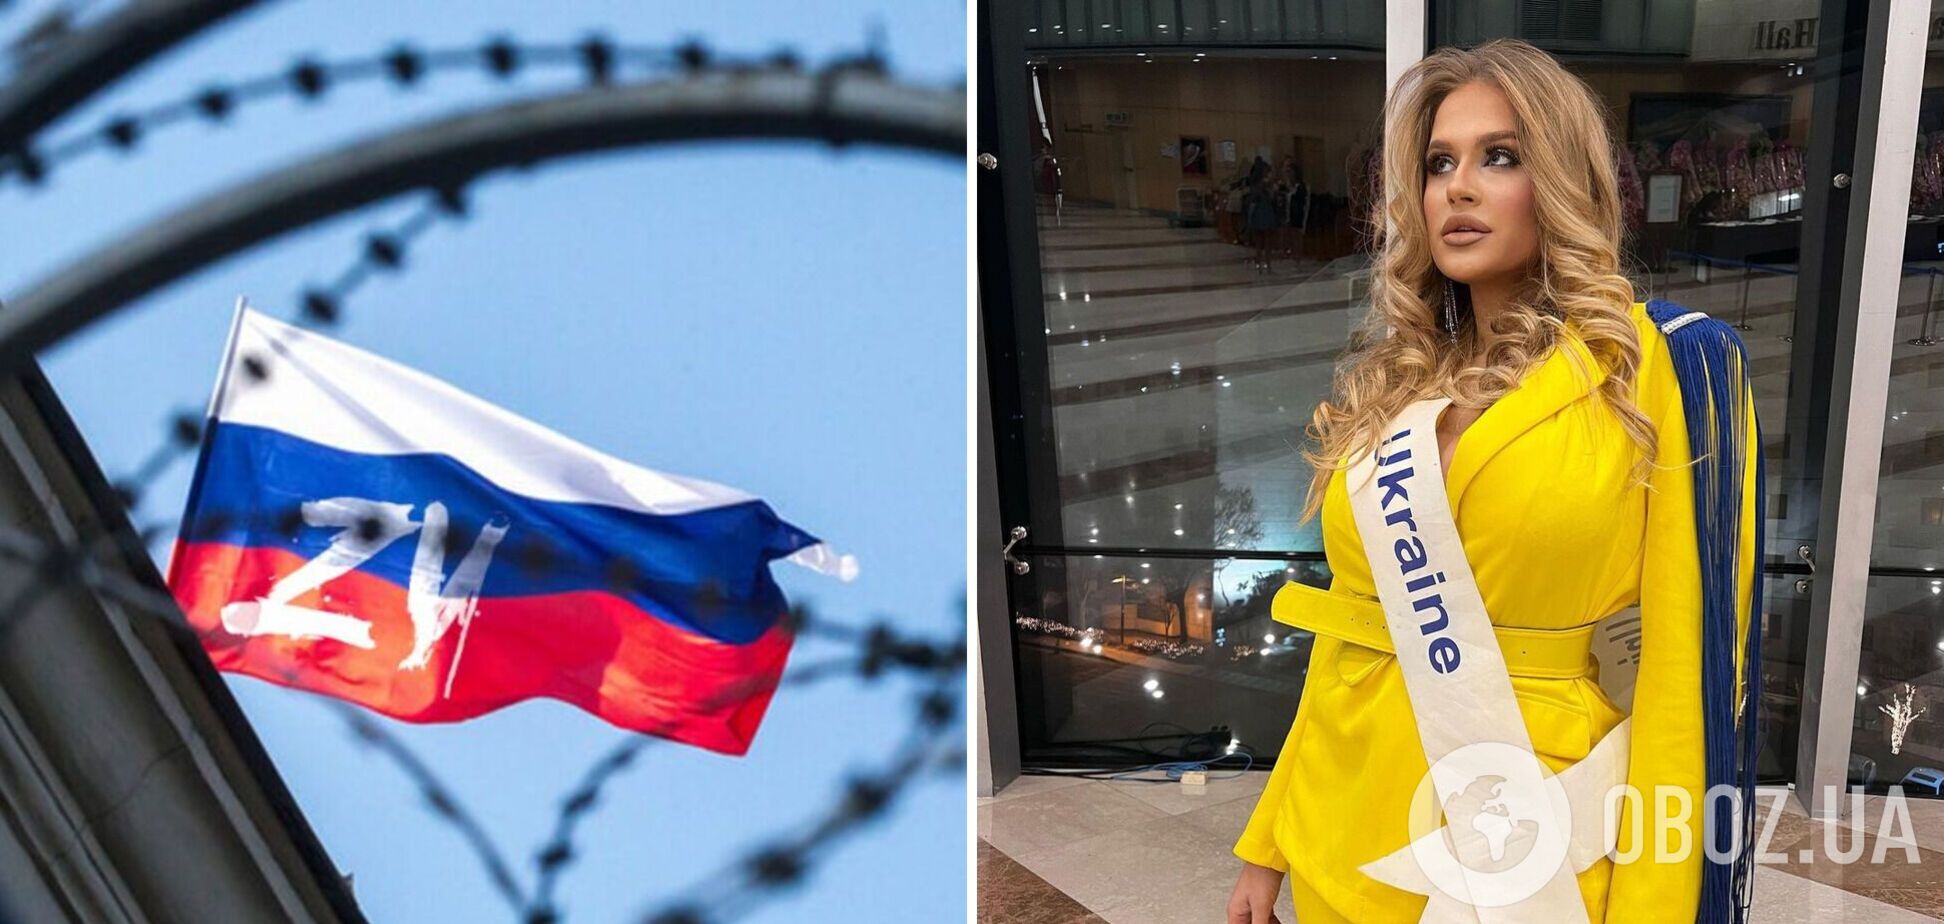 Називали нацисткою і змушували фотографуватися з росіянкою: українка шокувала подробицями про конкурс 'Міс Європа'